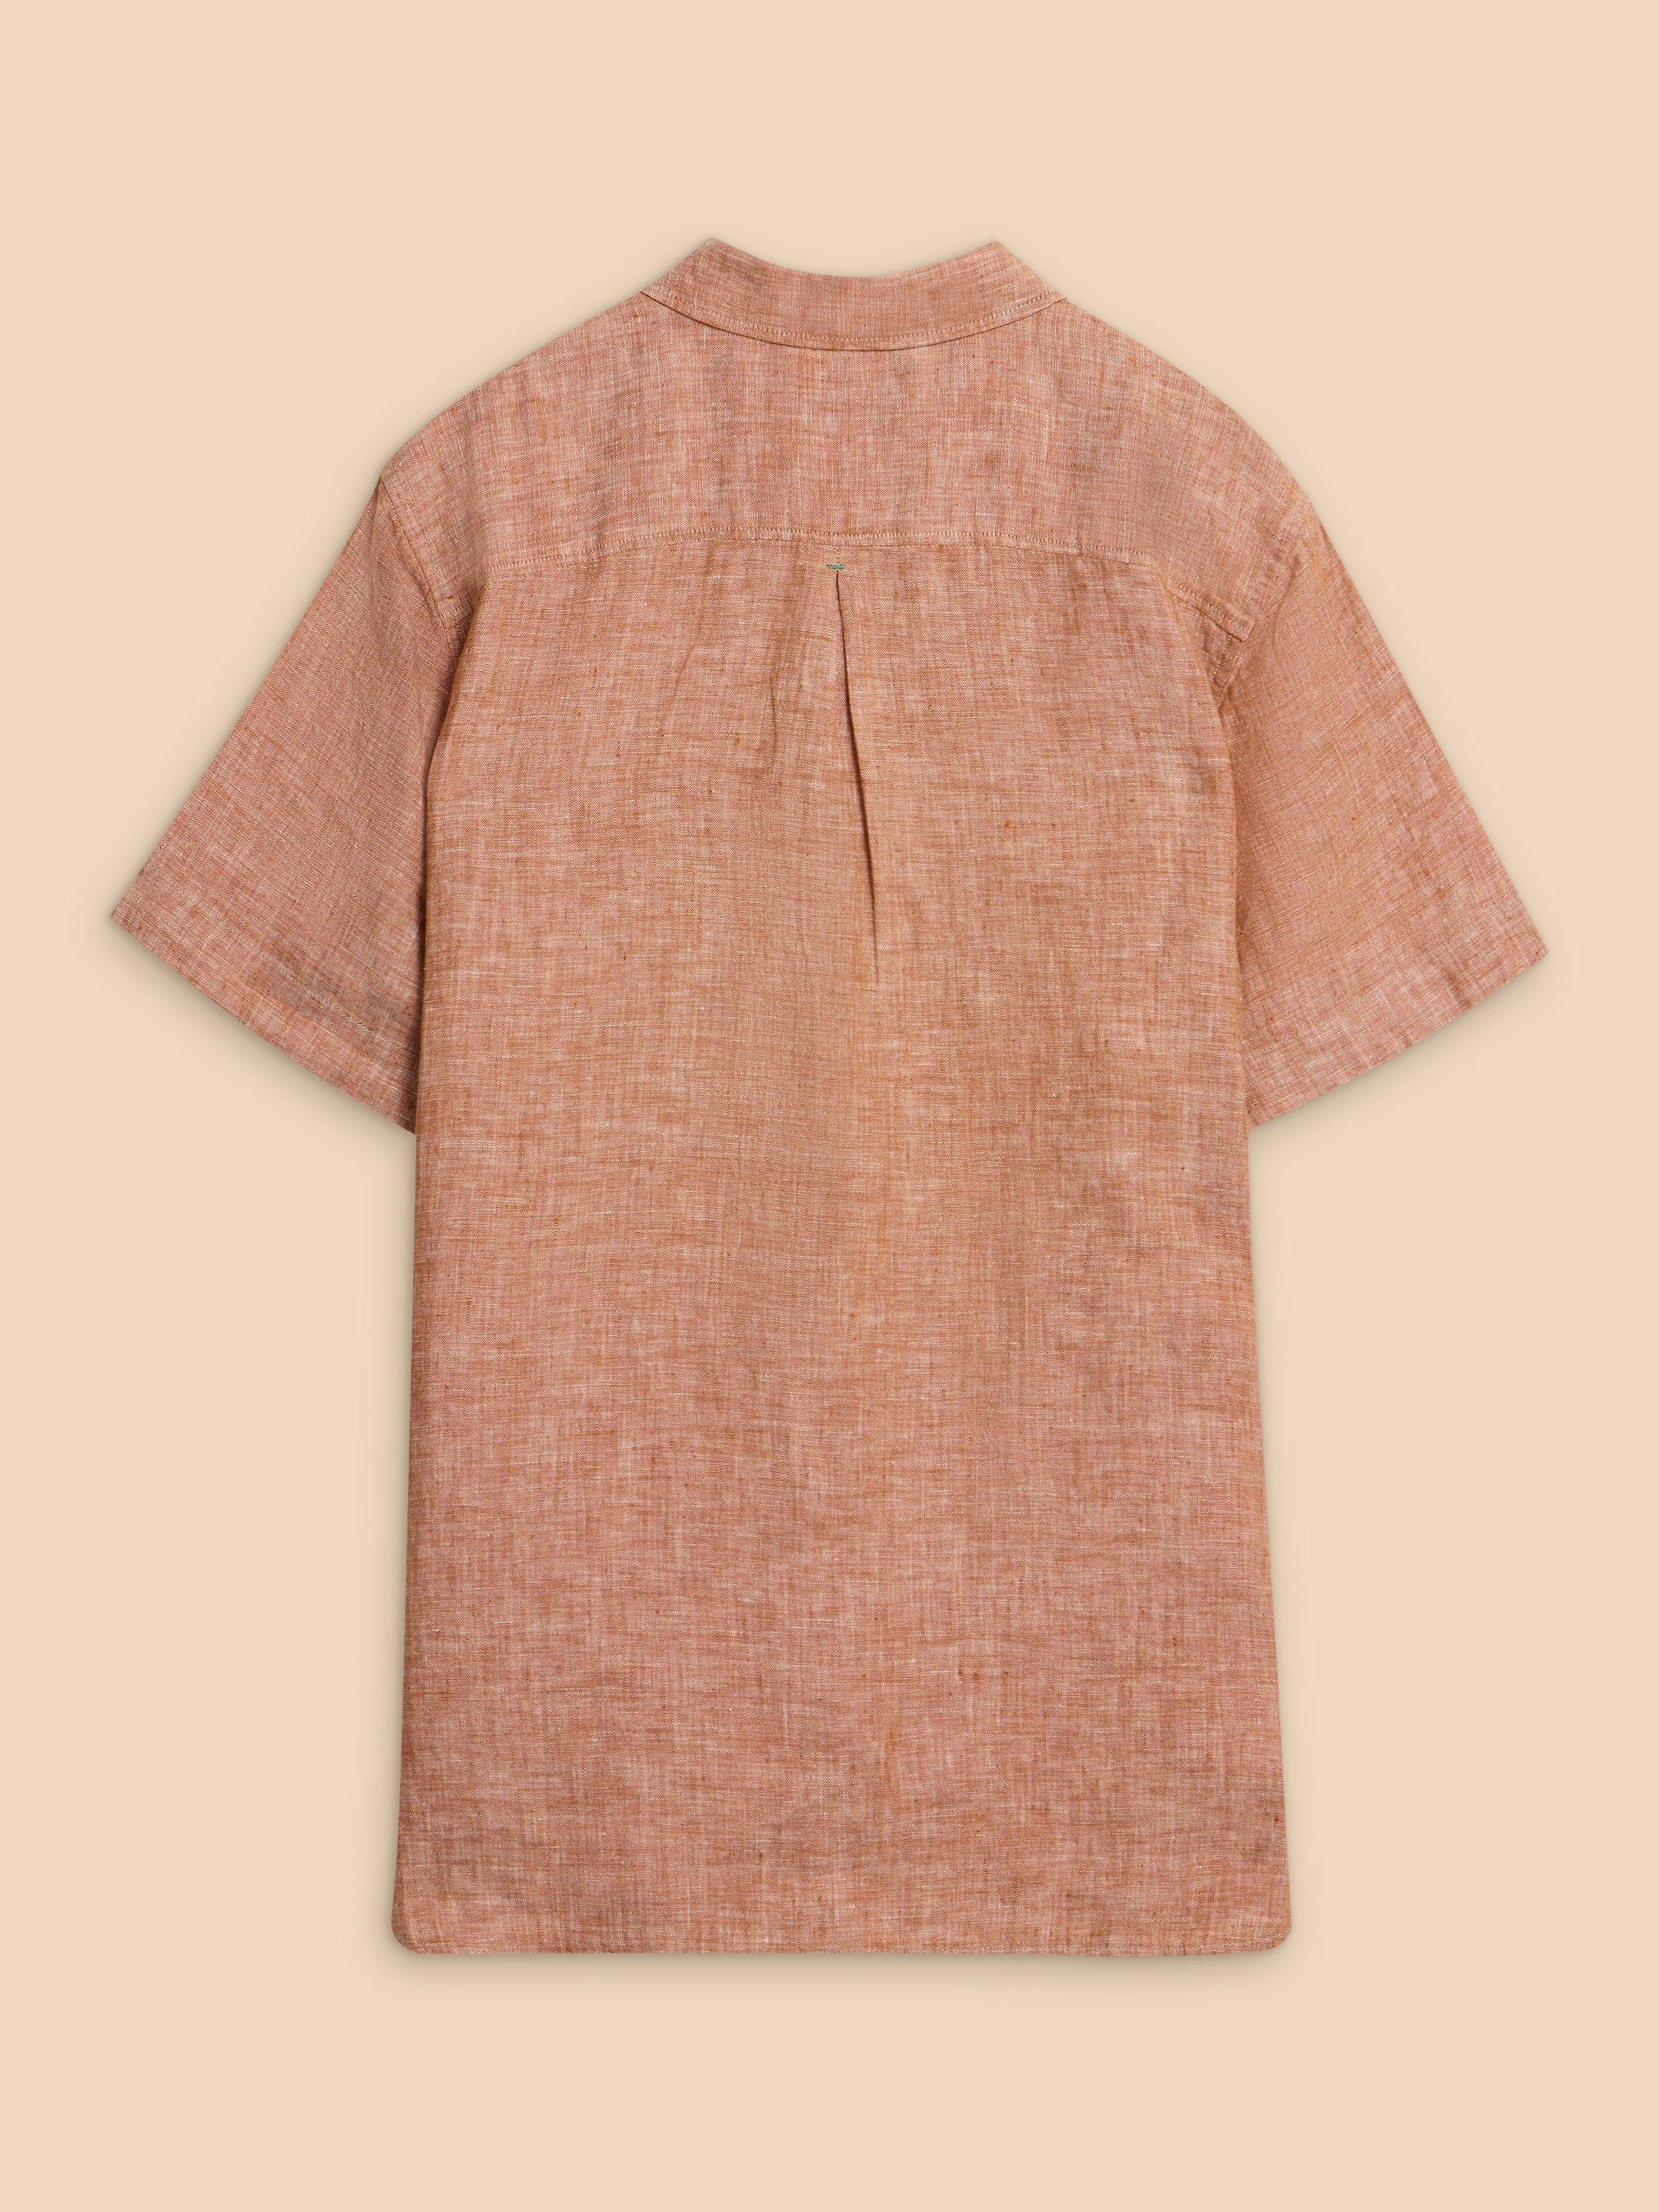 Pembroke SS Linen Shirt in DK ORANGE - FLAT BACK